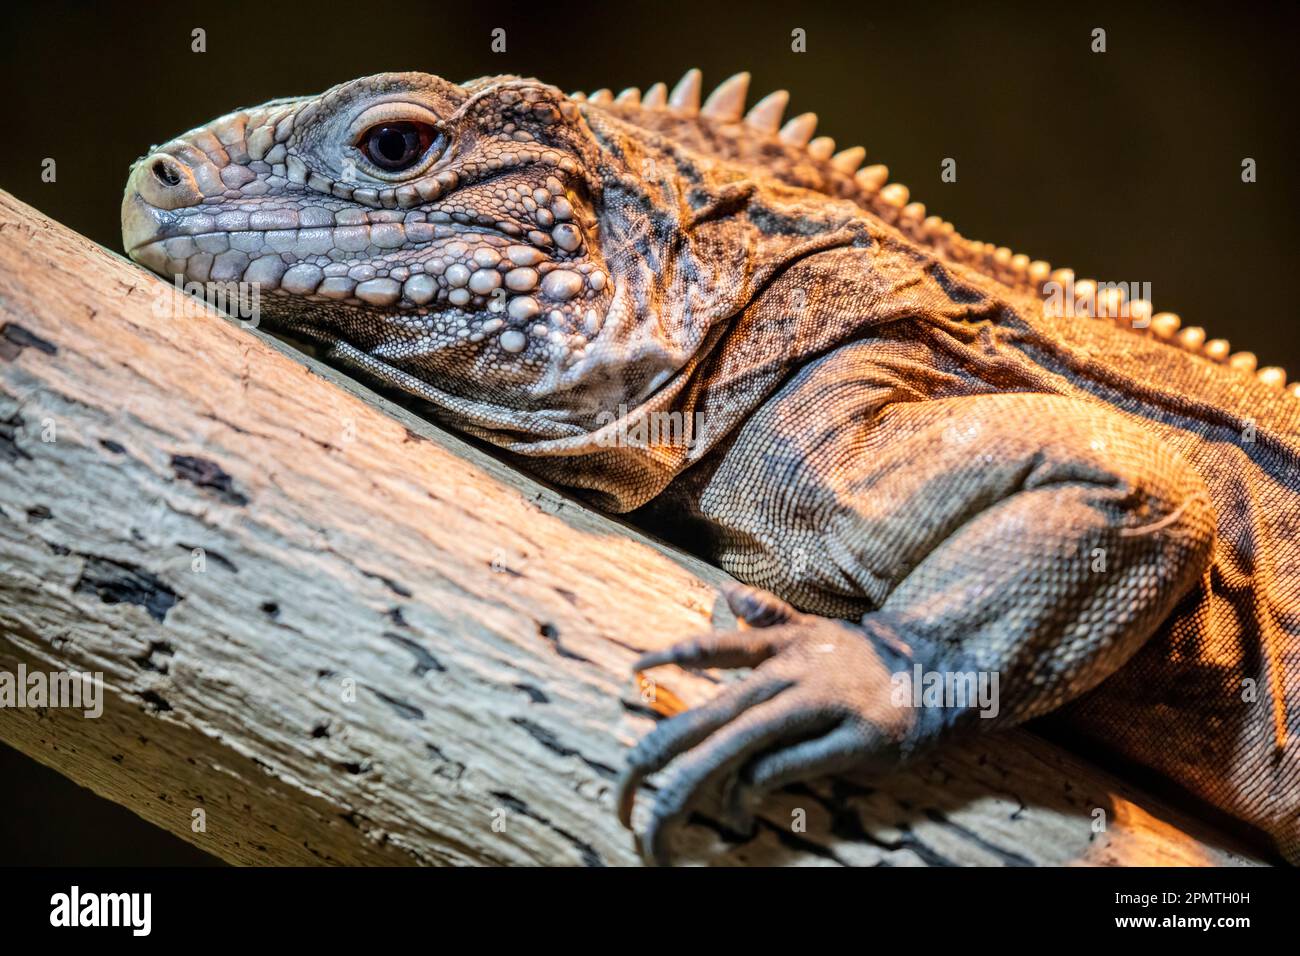 La iguana de roca cubana (Cyclura nubila) es uno de los grupos de lagartos más amenazados. Una especie herbívora con una cola gruesa y papadas con pinchos. Foto de stock